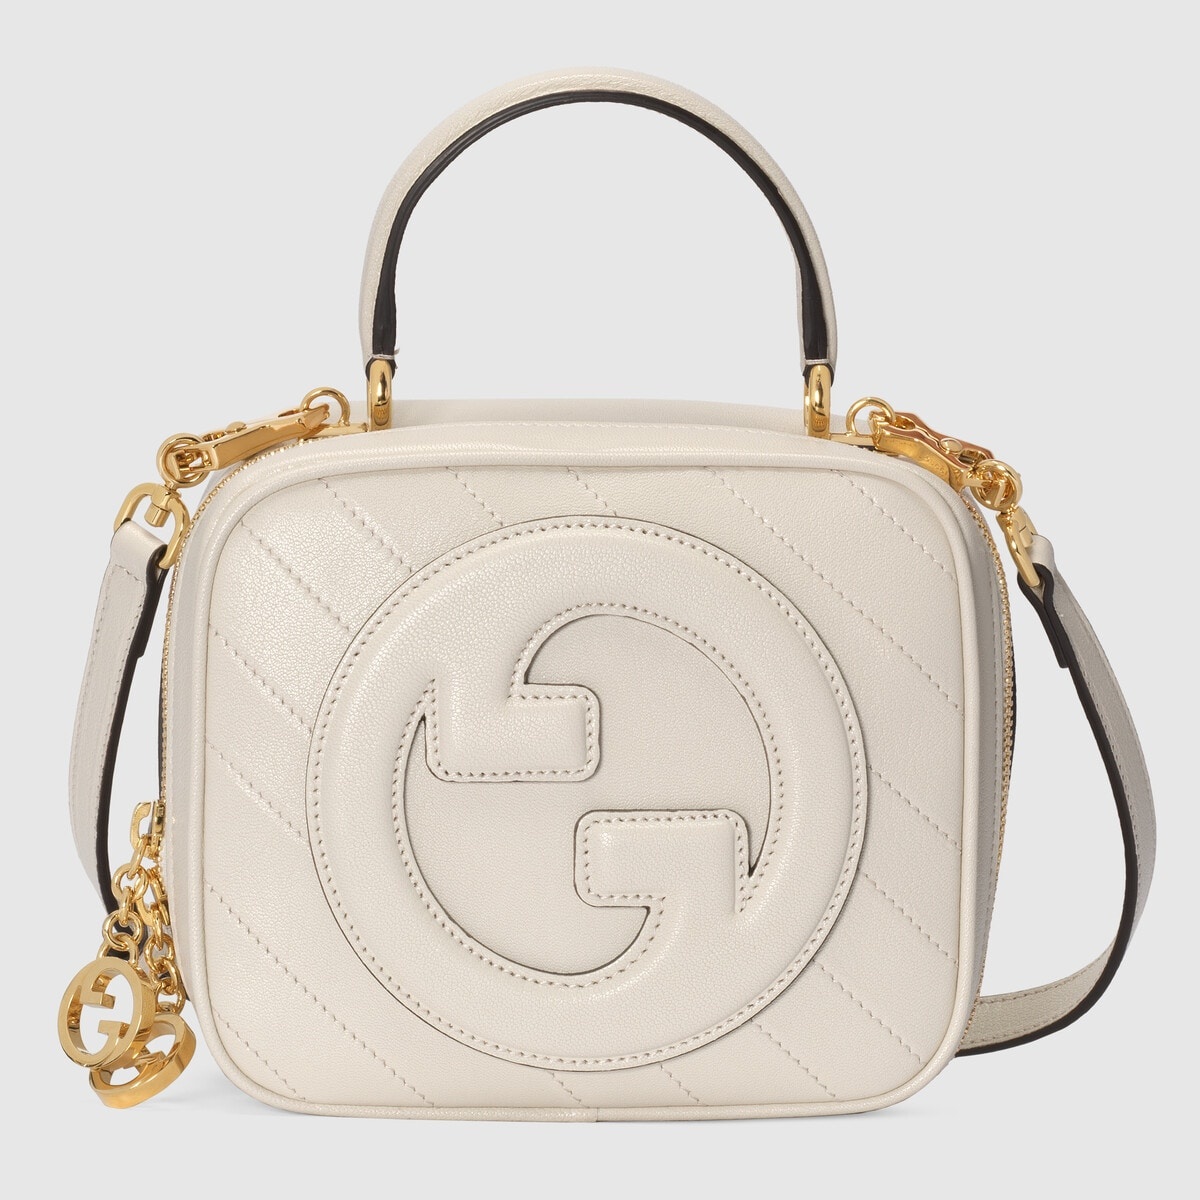 Gucci Blondie top handle bag - 1